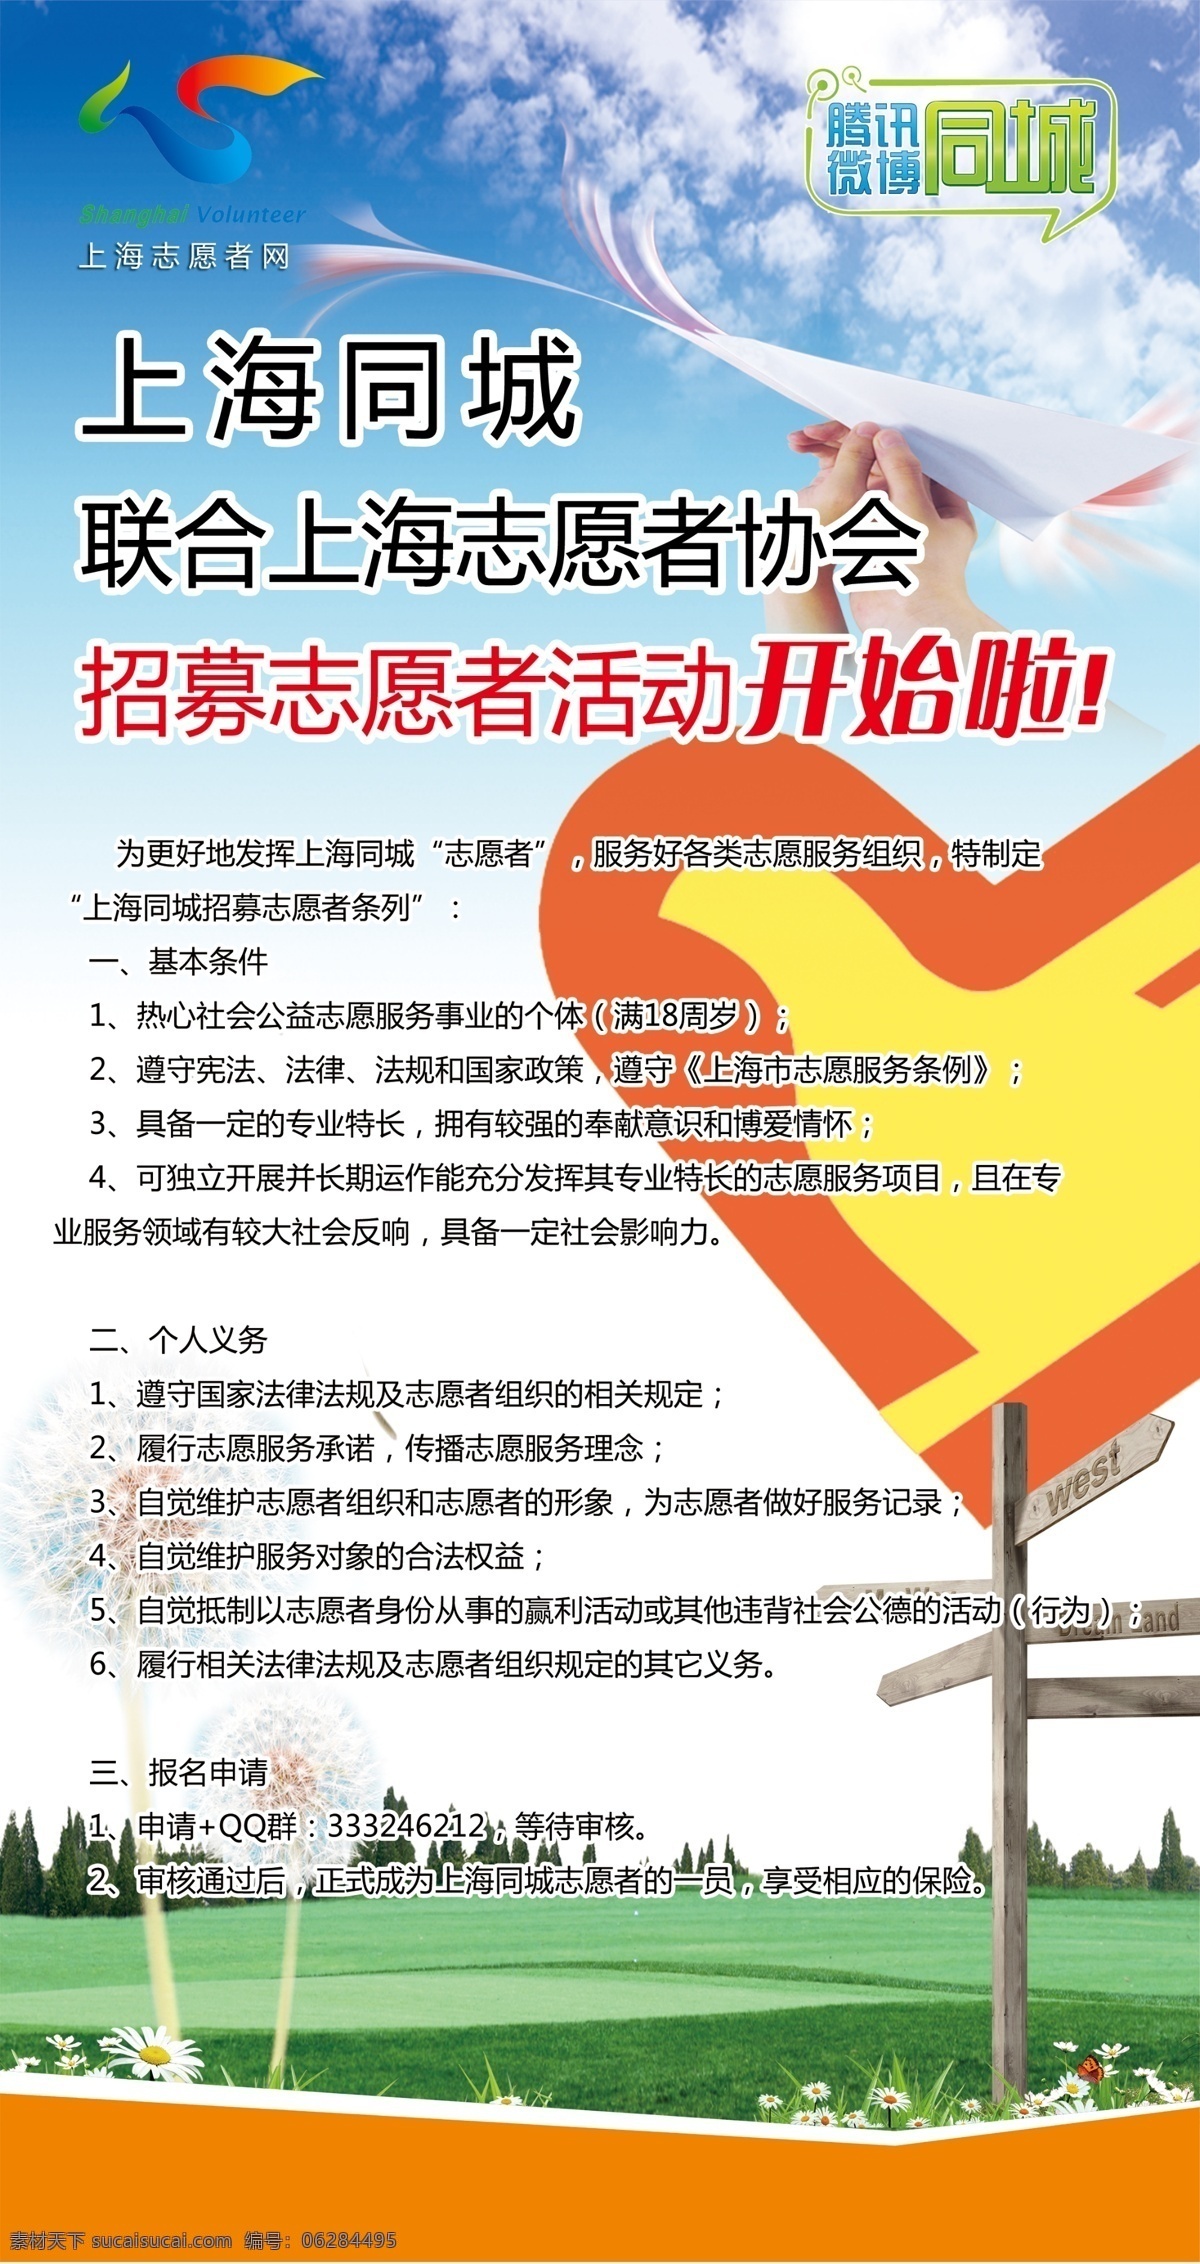 志愿者 招募 海报 蓝天白云 志愿者招募 上海同城 腾讯同城 微博同城 草地 花朵 路标 志愿者标志 广告设计模板 源文件